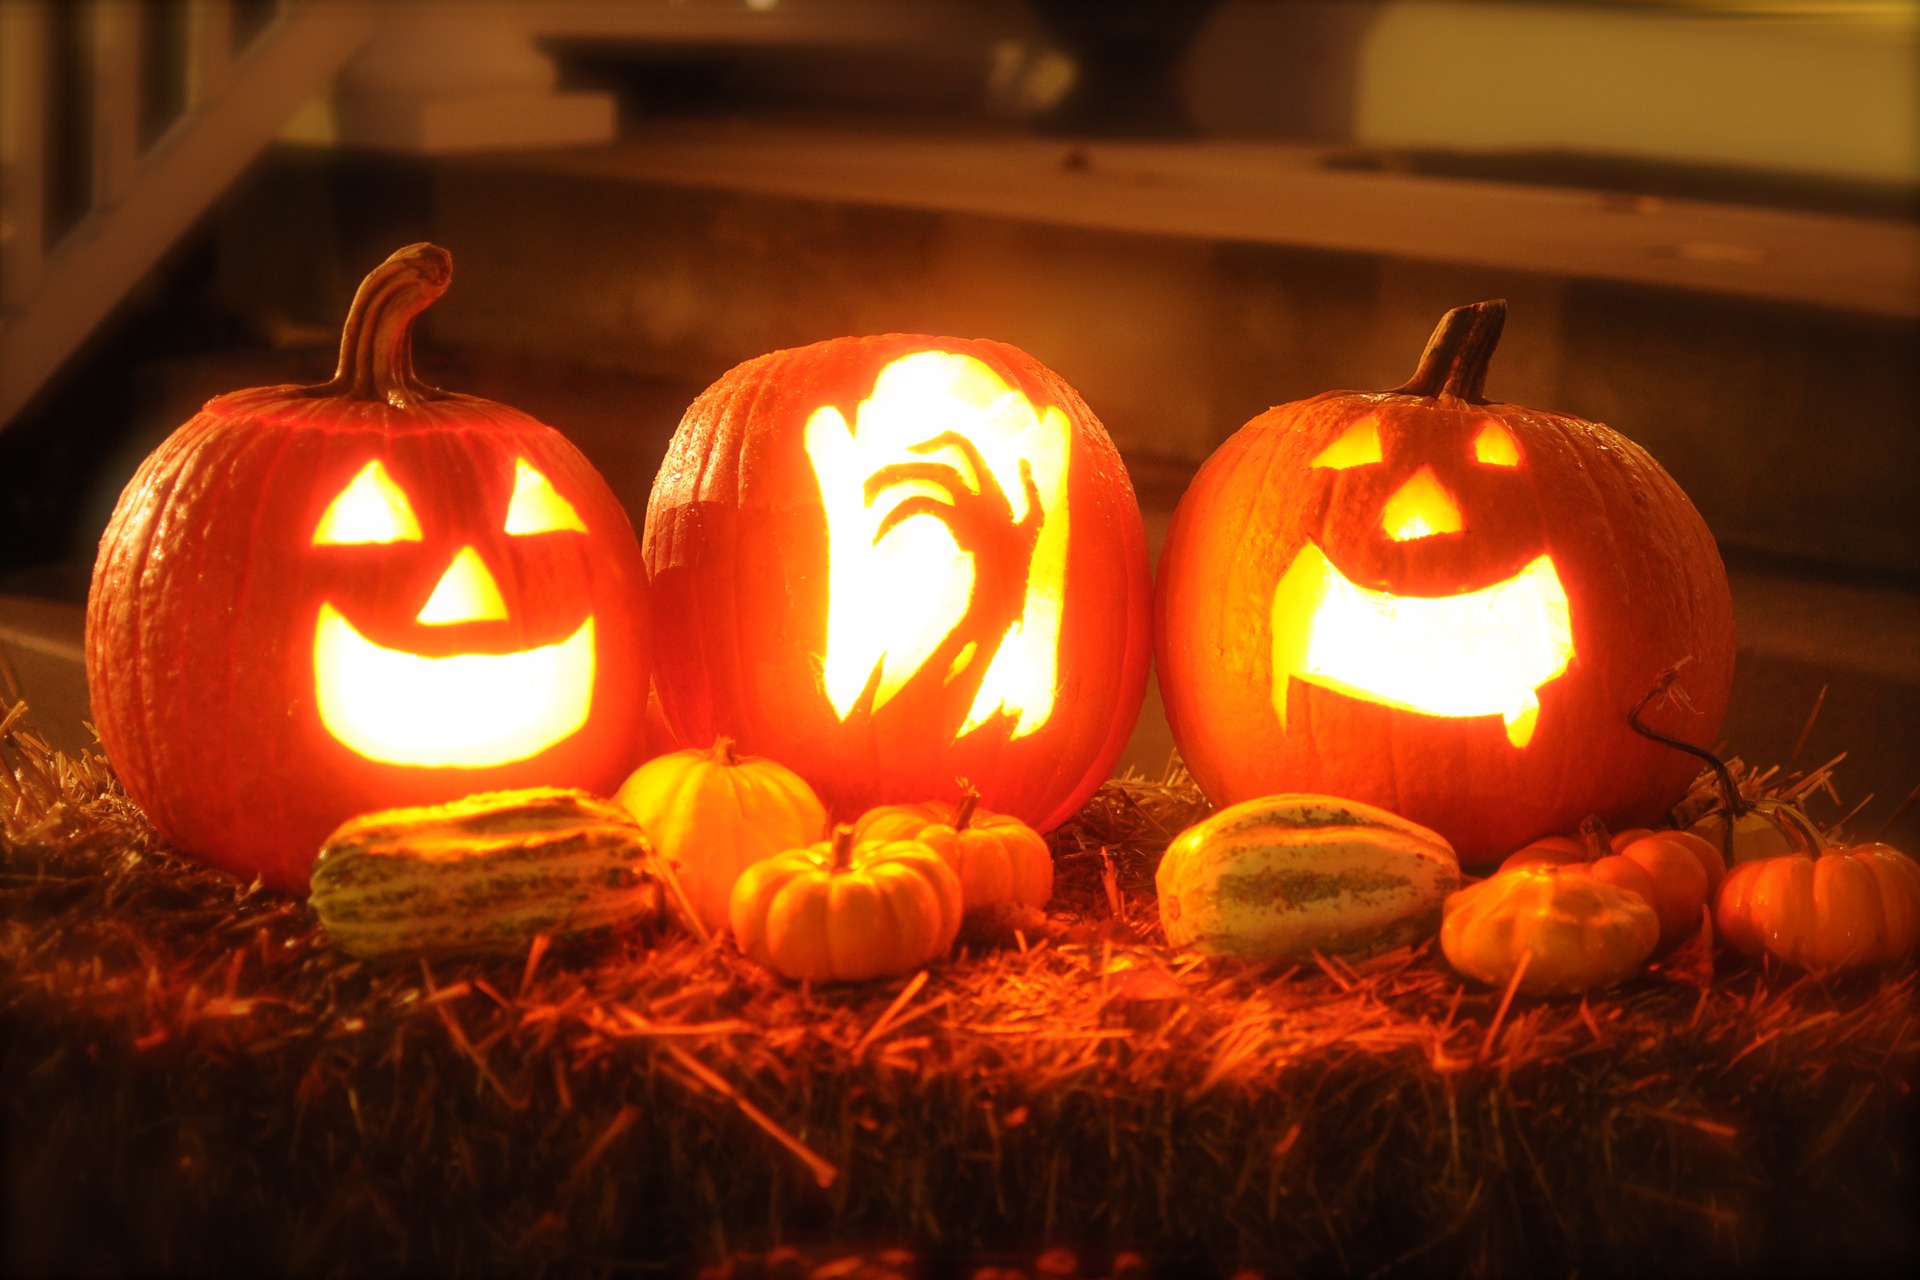 Jack-o-lantern, czyli świecąca dynia na Halloween - trick or treat